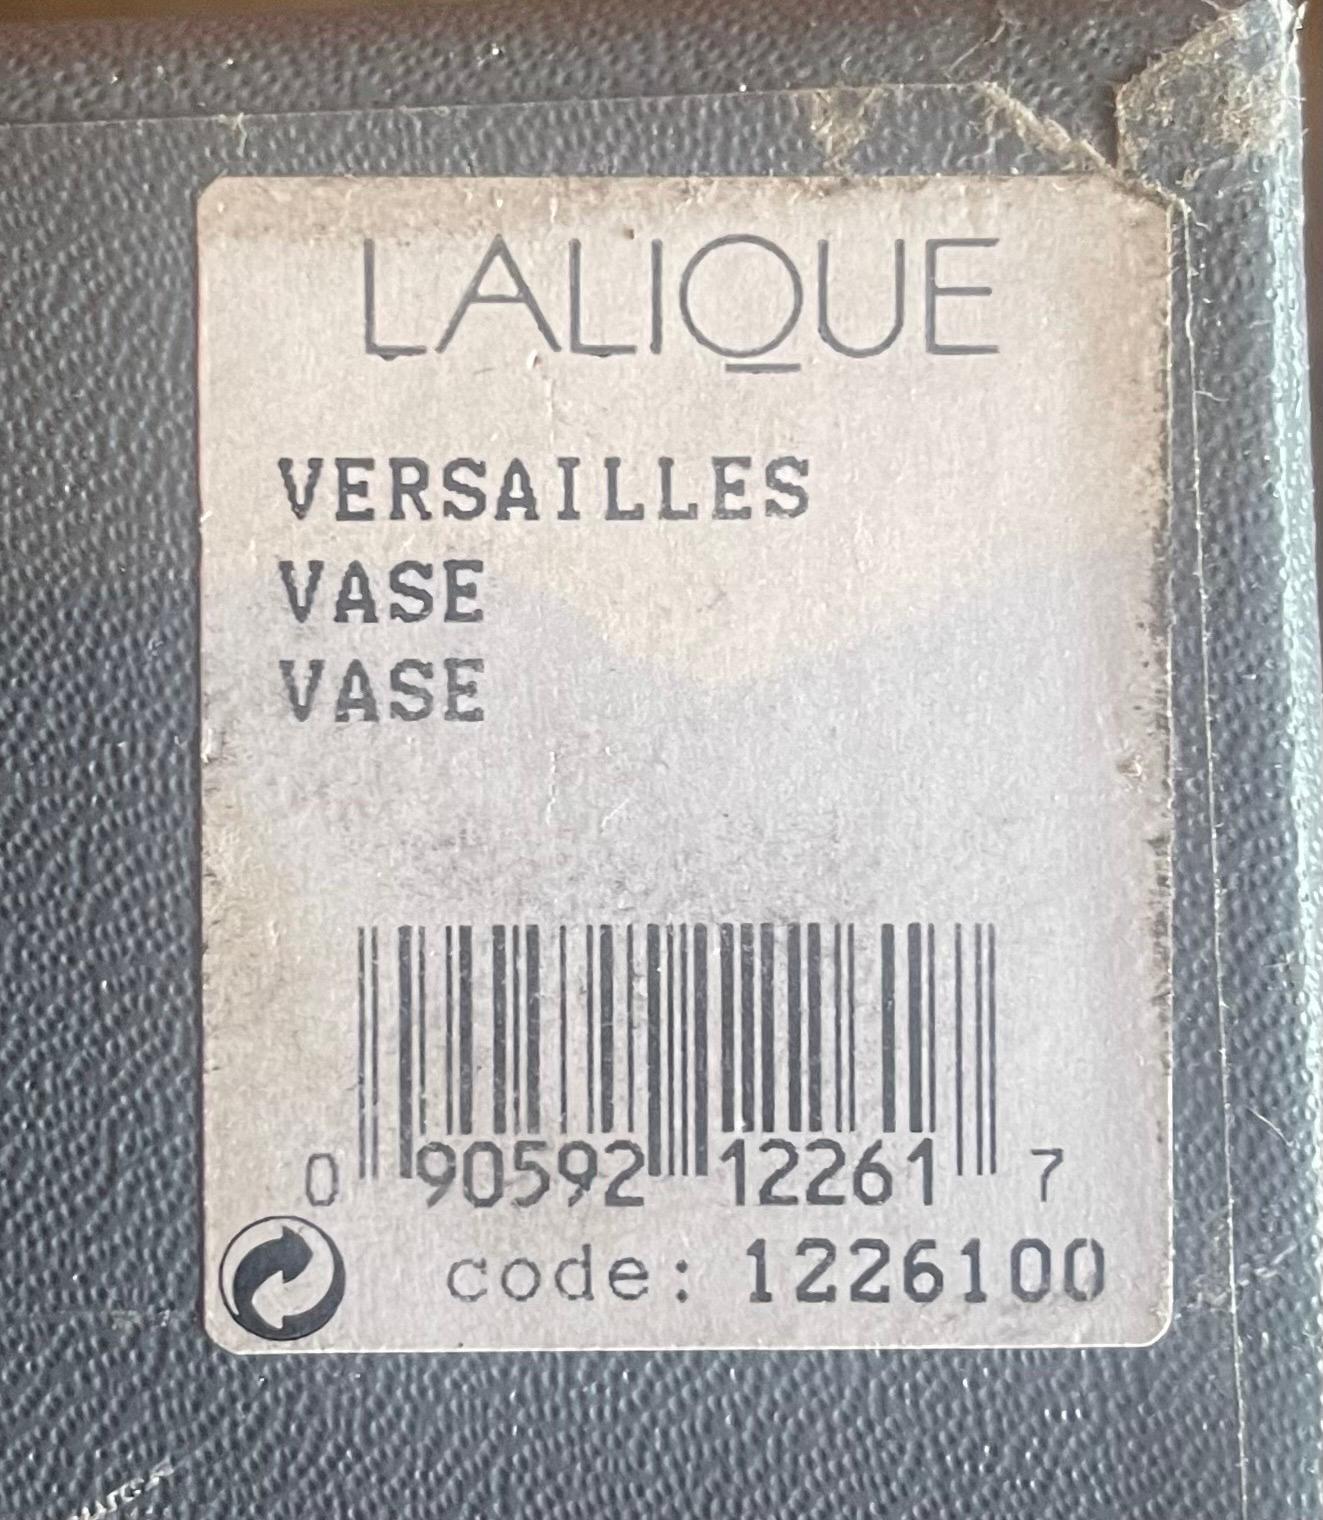 Massive Versailles Vase / Urn by Lalique of France 8